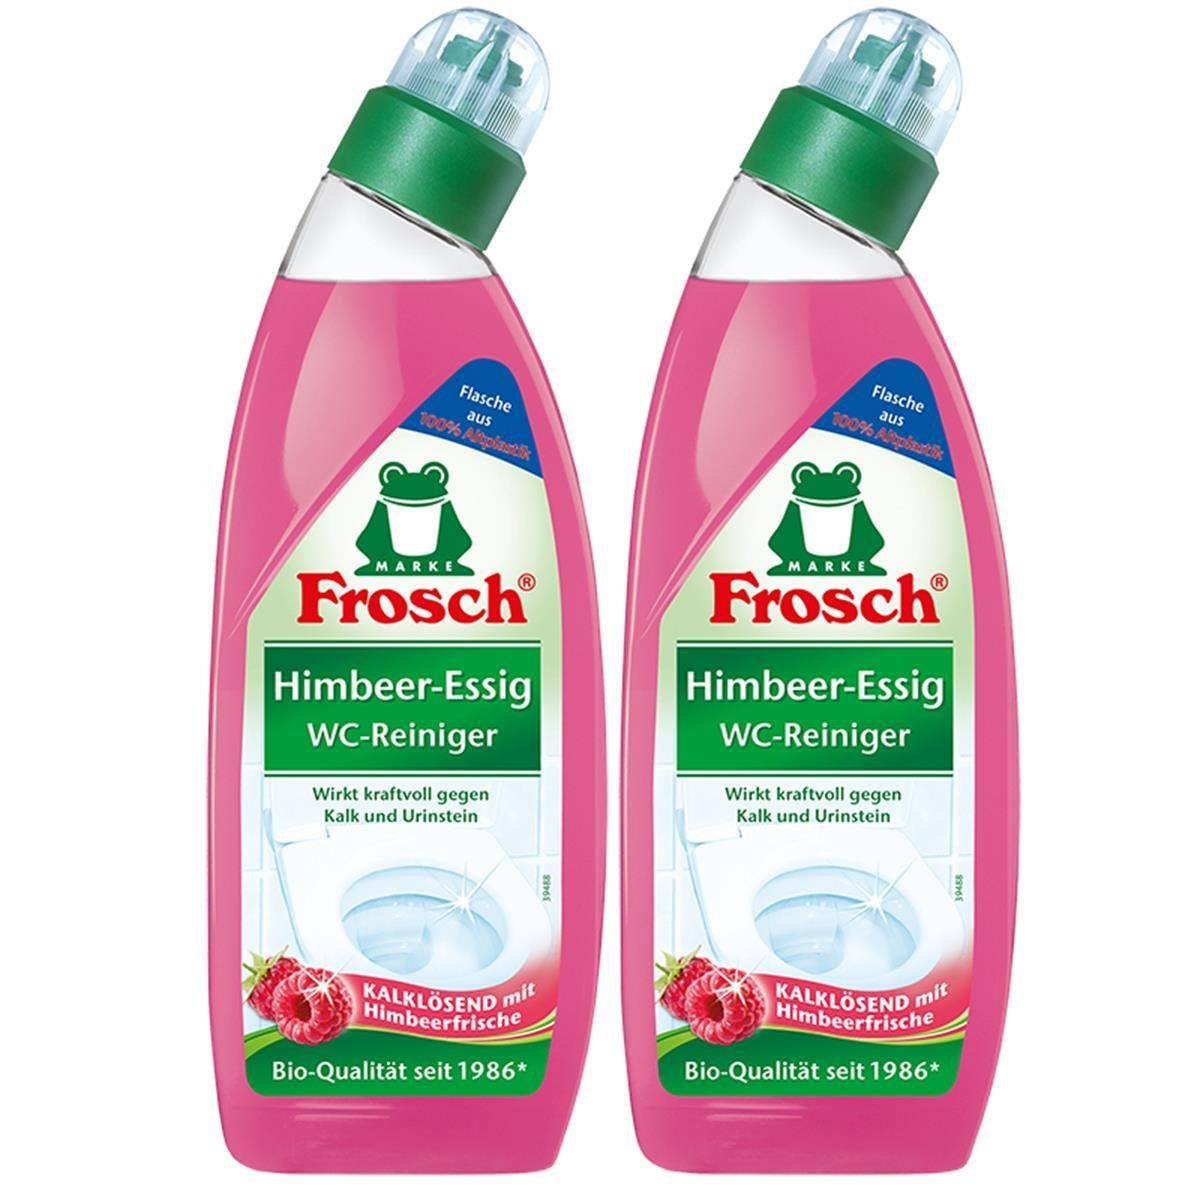 FROSCH Frosch Himbeer-Essig WC-Reiniger 750 ml - Gegen Kalk und Urinstein  (2e WC-Reiniger